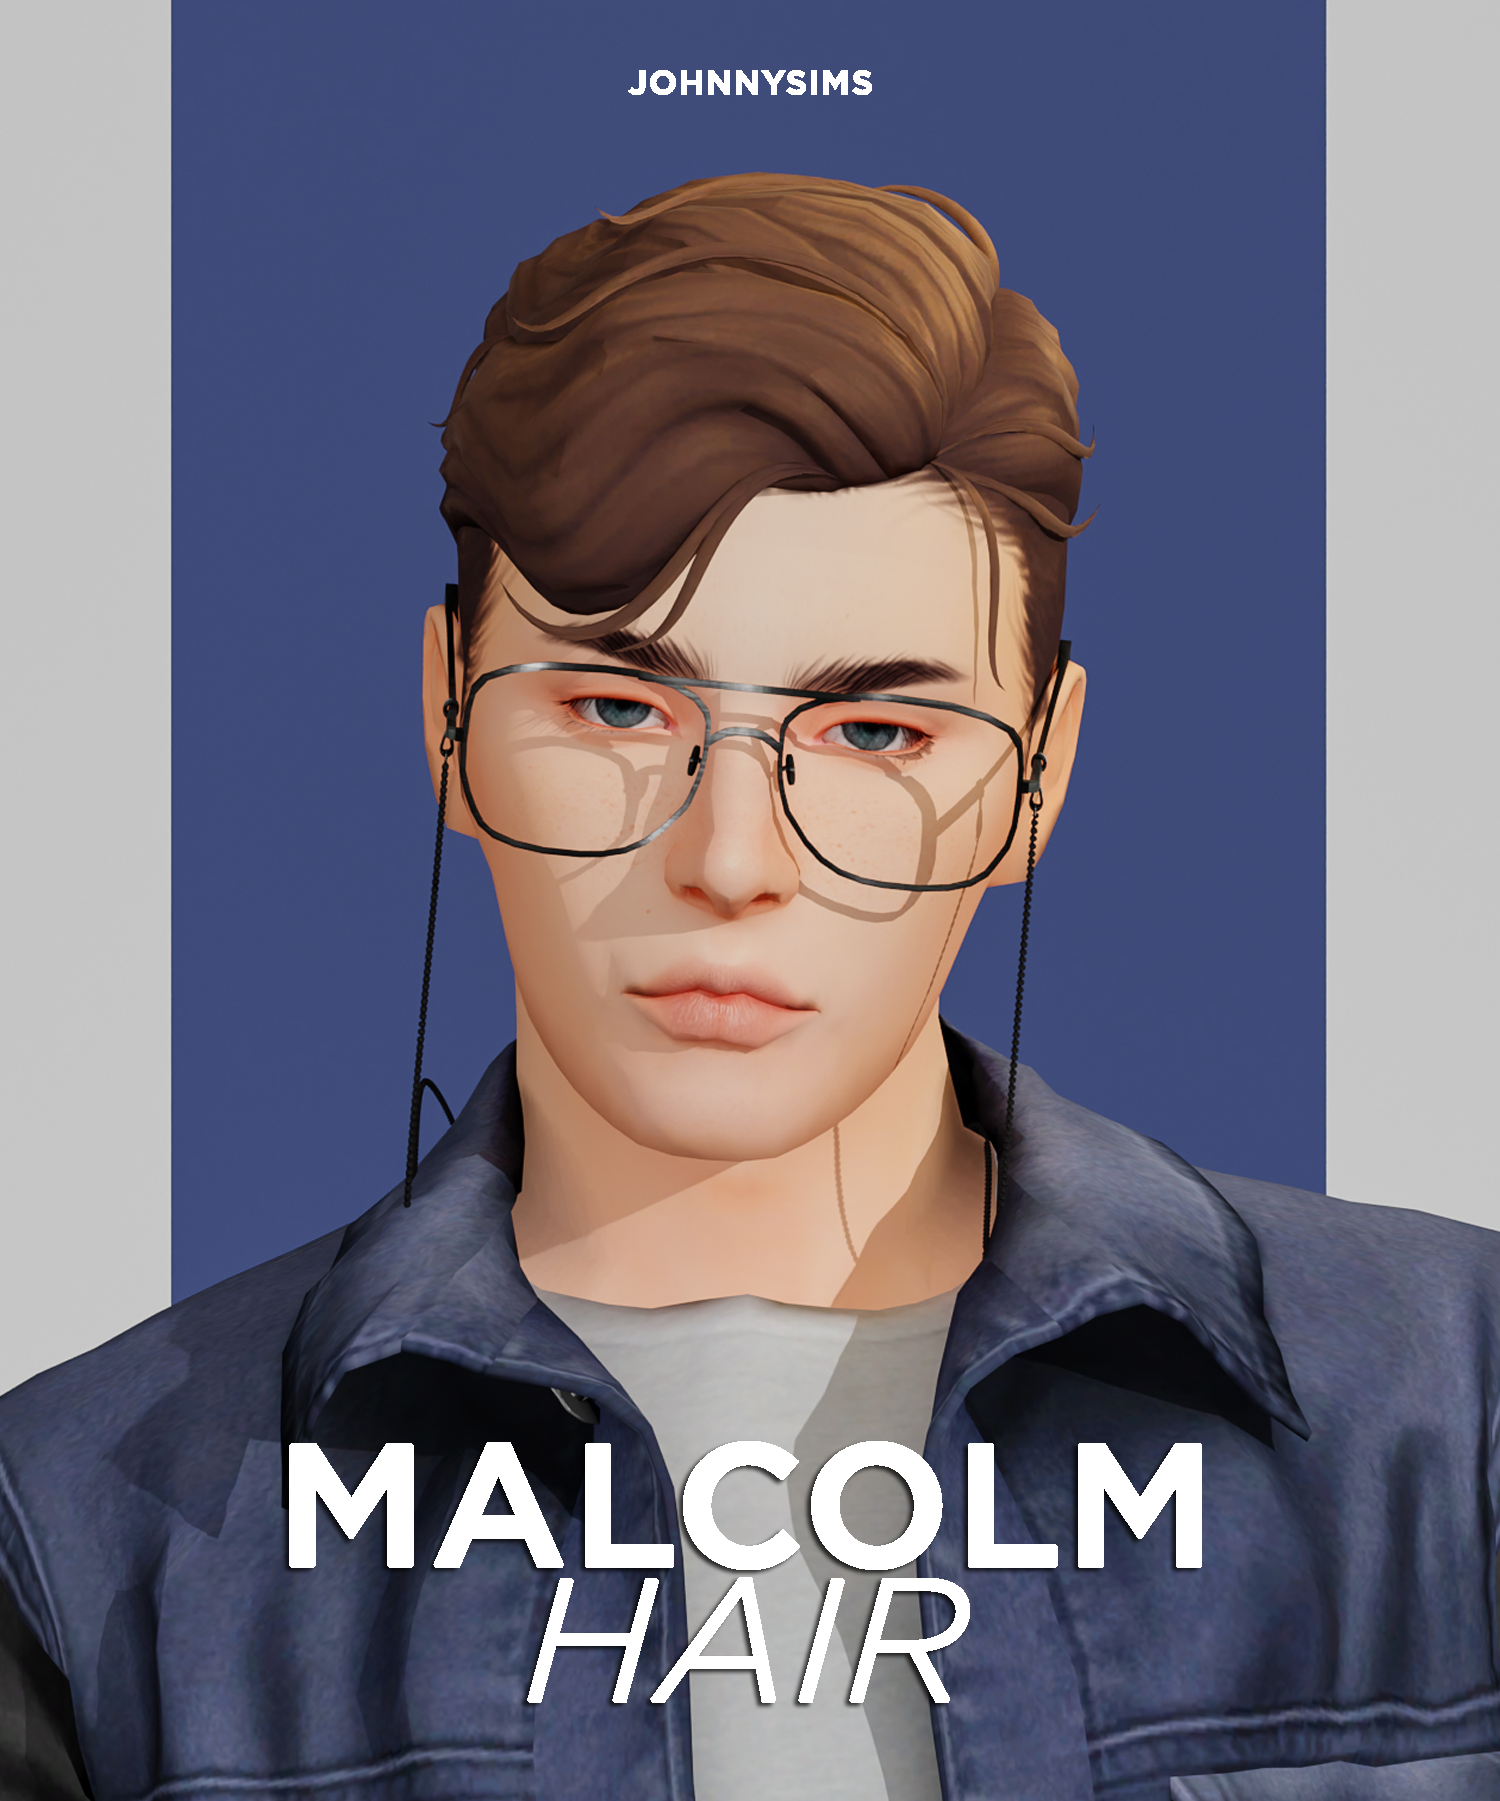 Malcolm Hair - The Sims 4 Create a Sim - CurseForge